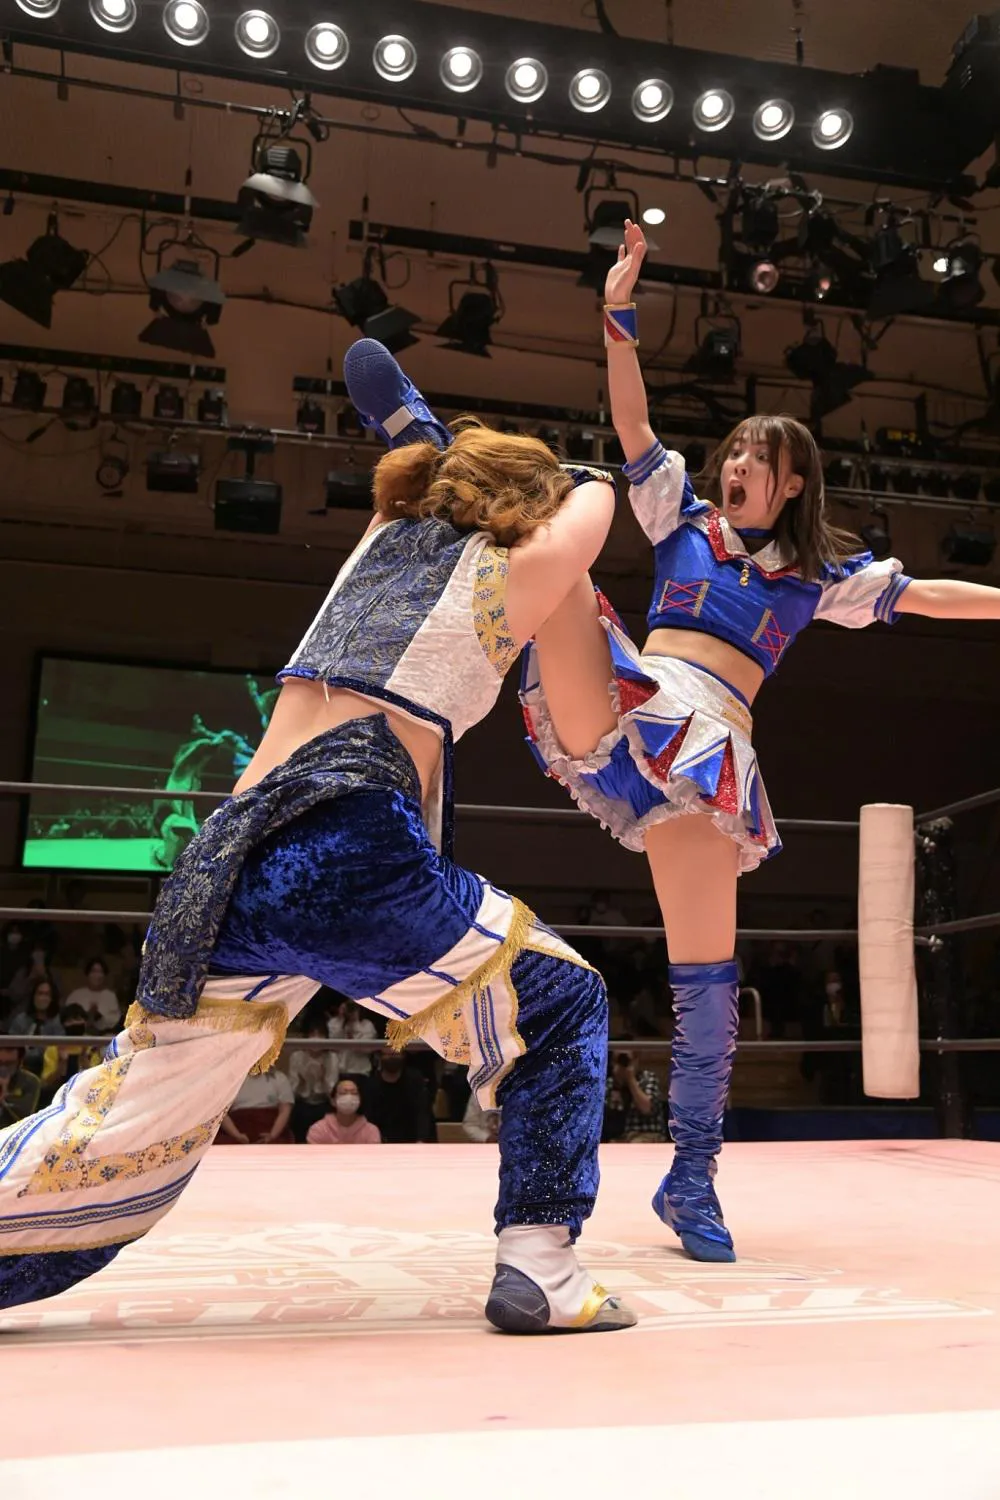 東京女子プロレス 生写真 伊藤麻希 - 格闘技・プロレス